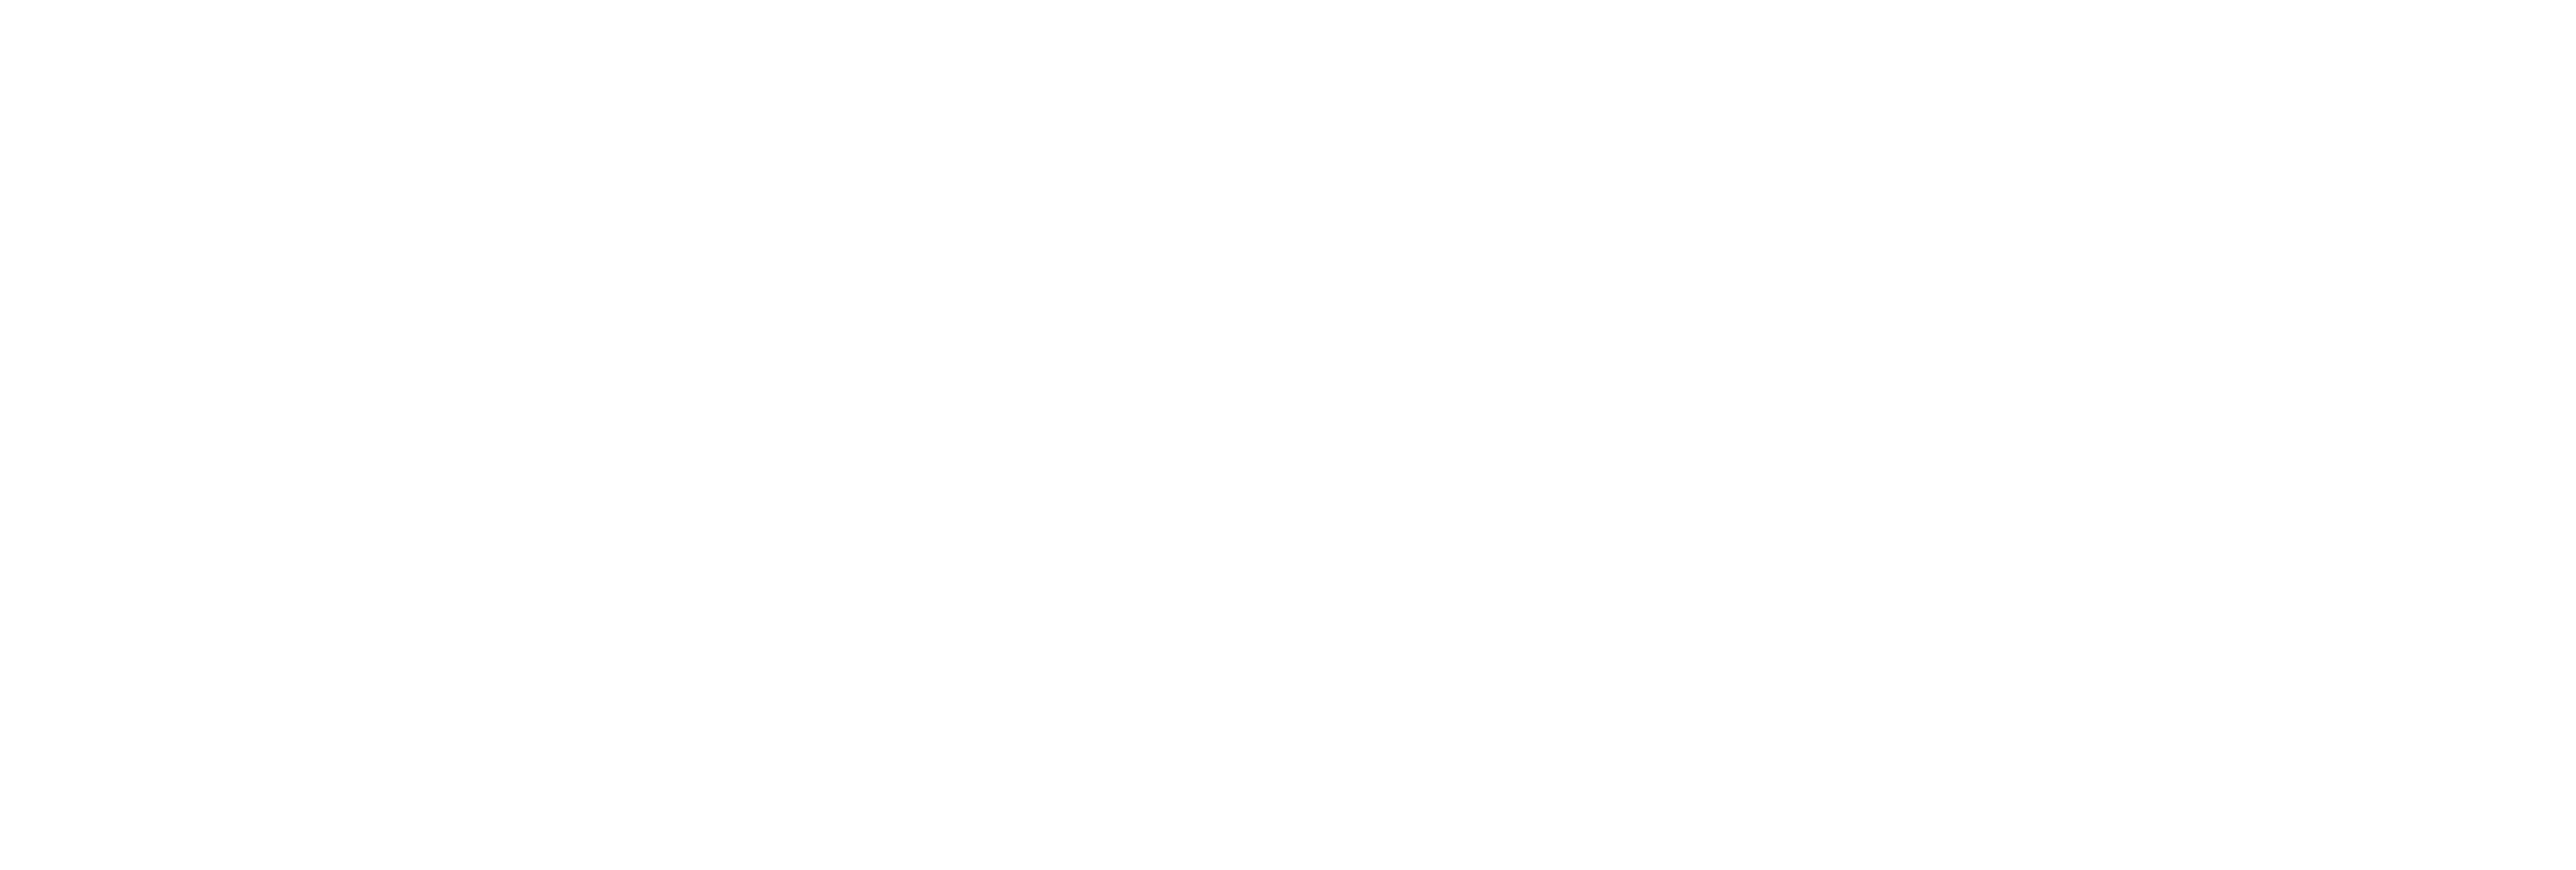 AniCura Clinica Veterinaria Sirio logo